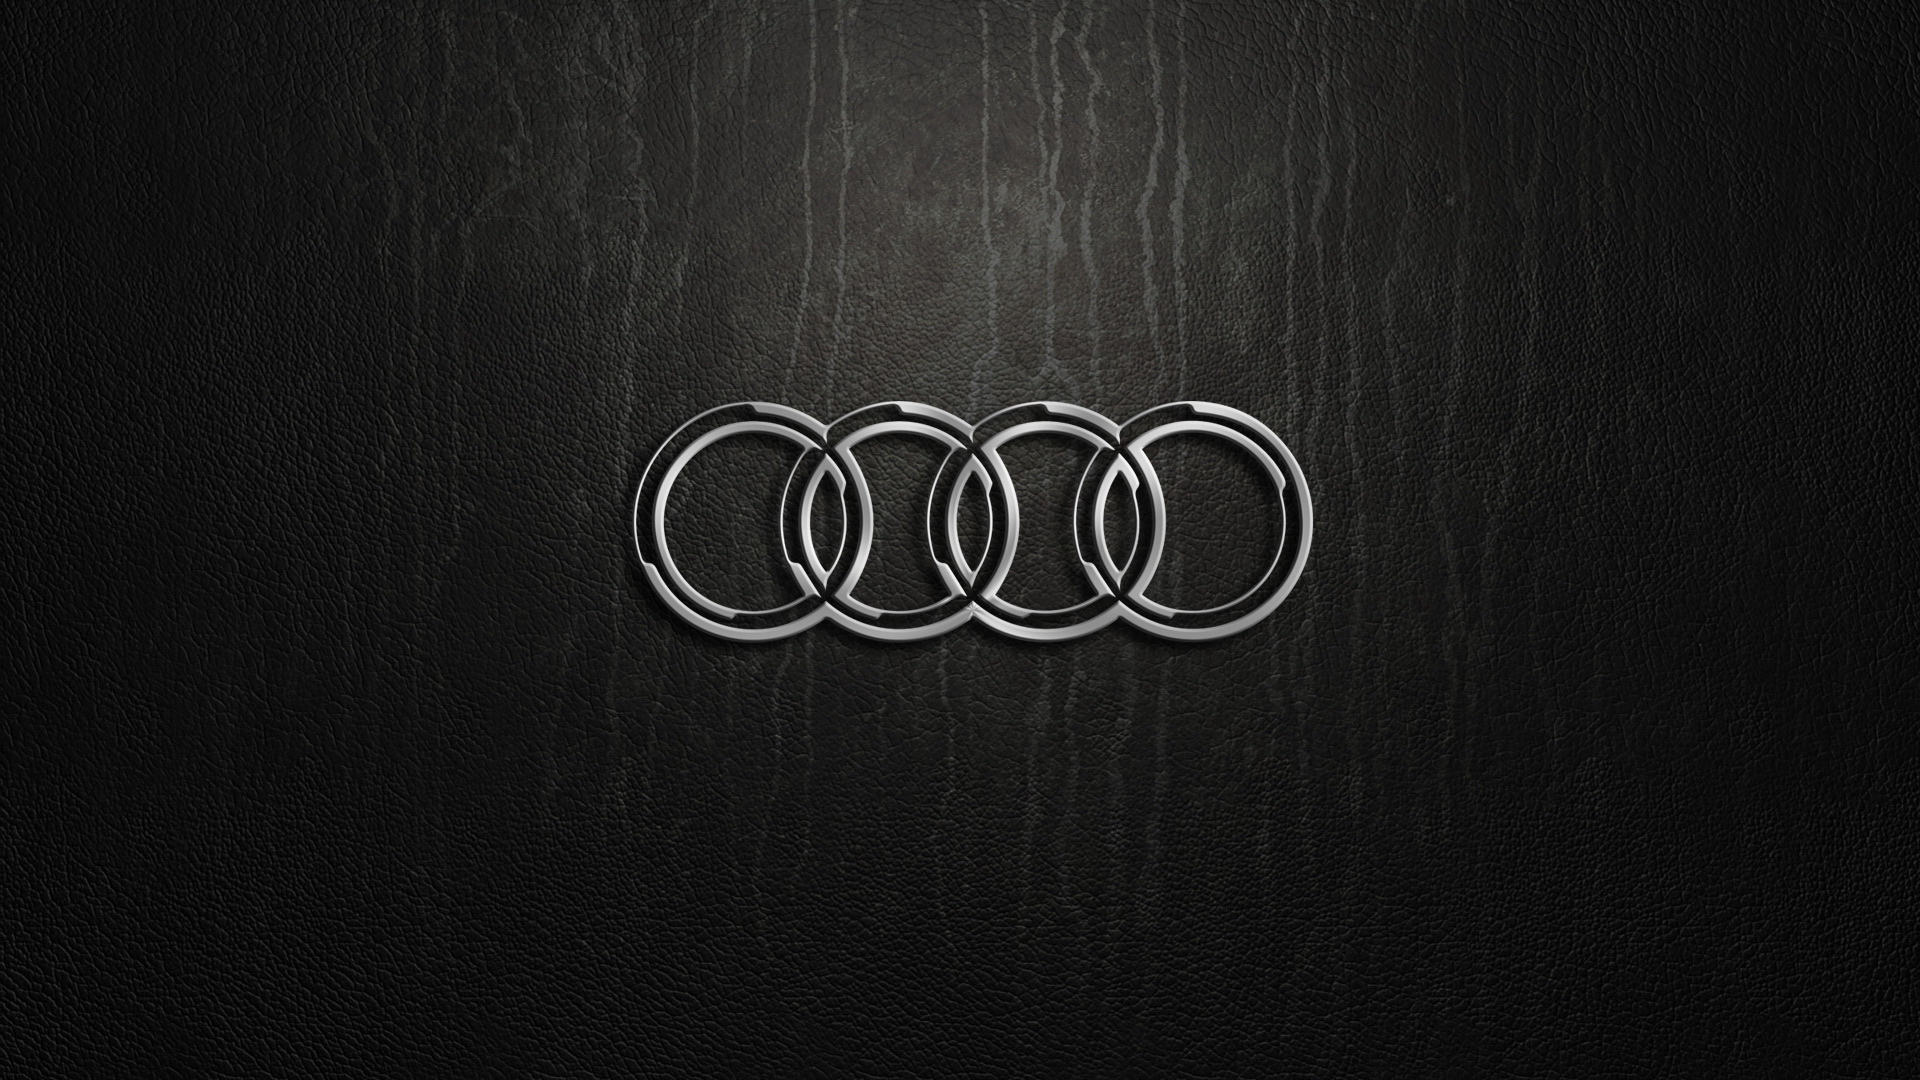 Audi logo wallpaper full HD, image source: www.pixelstalk.net.